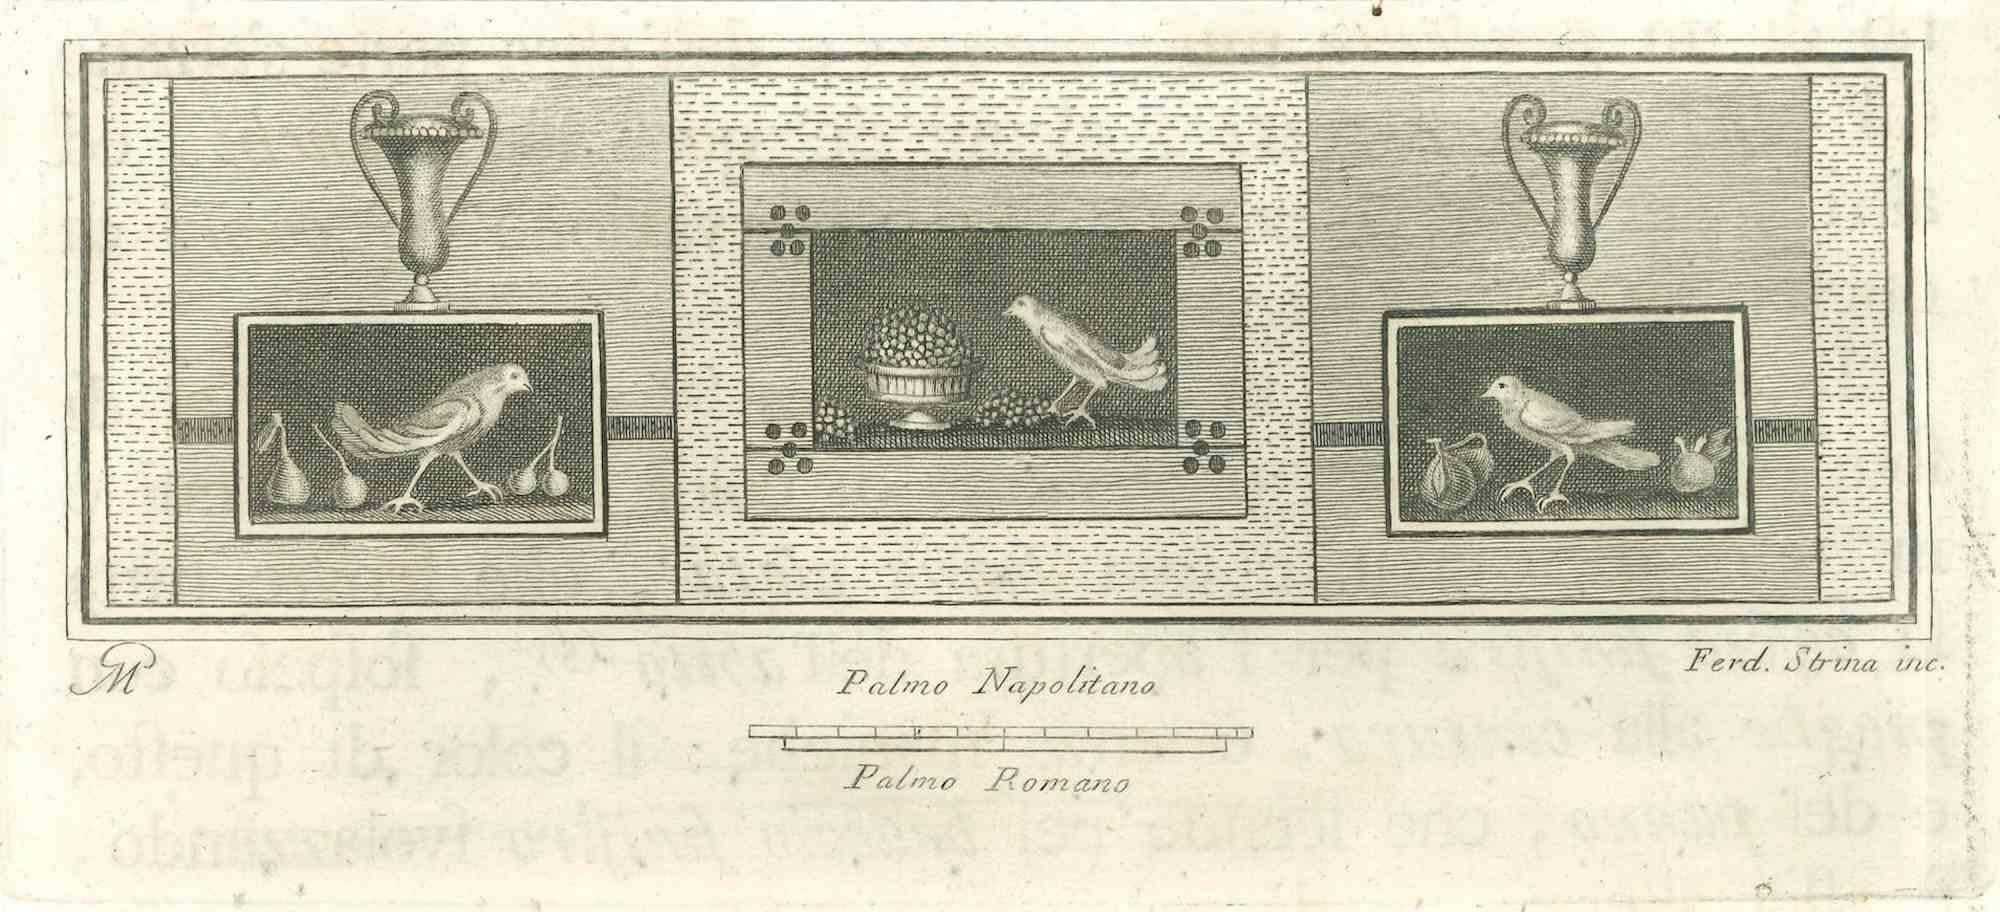 Oiseaux de la série "Antiquités d'Herculanum", est une gravure sur papier réalisée par Fernando Strina au 18ème siècle.

Monogramme sur l'assiette.

Bon état avec quelques rousseurs.

La gravure appartient à la suite d'estampes "Antiquités